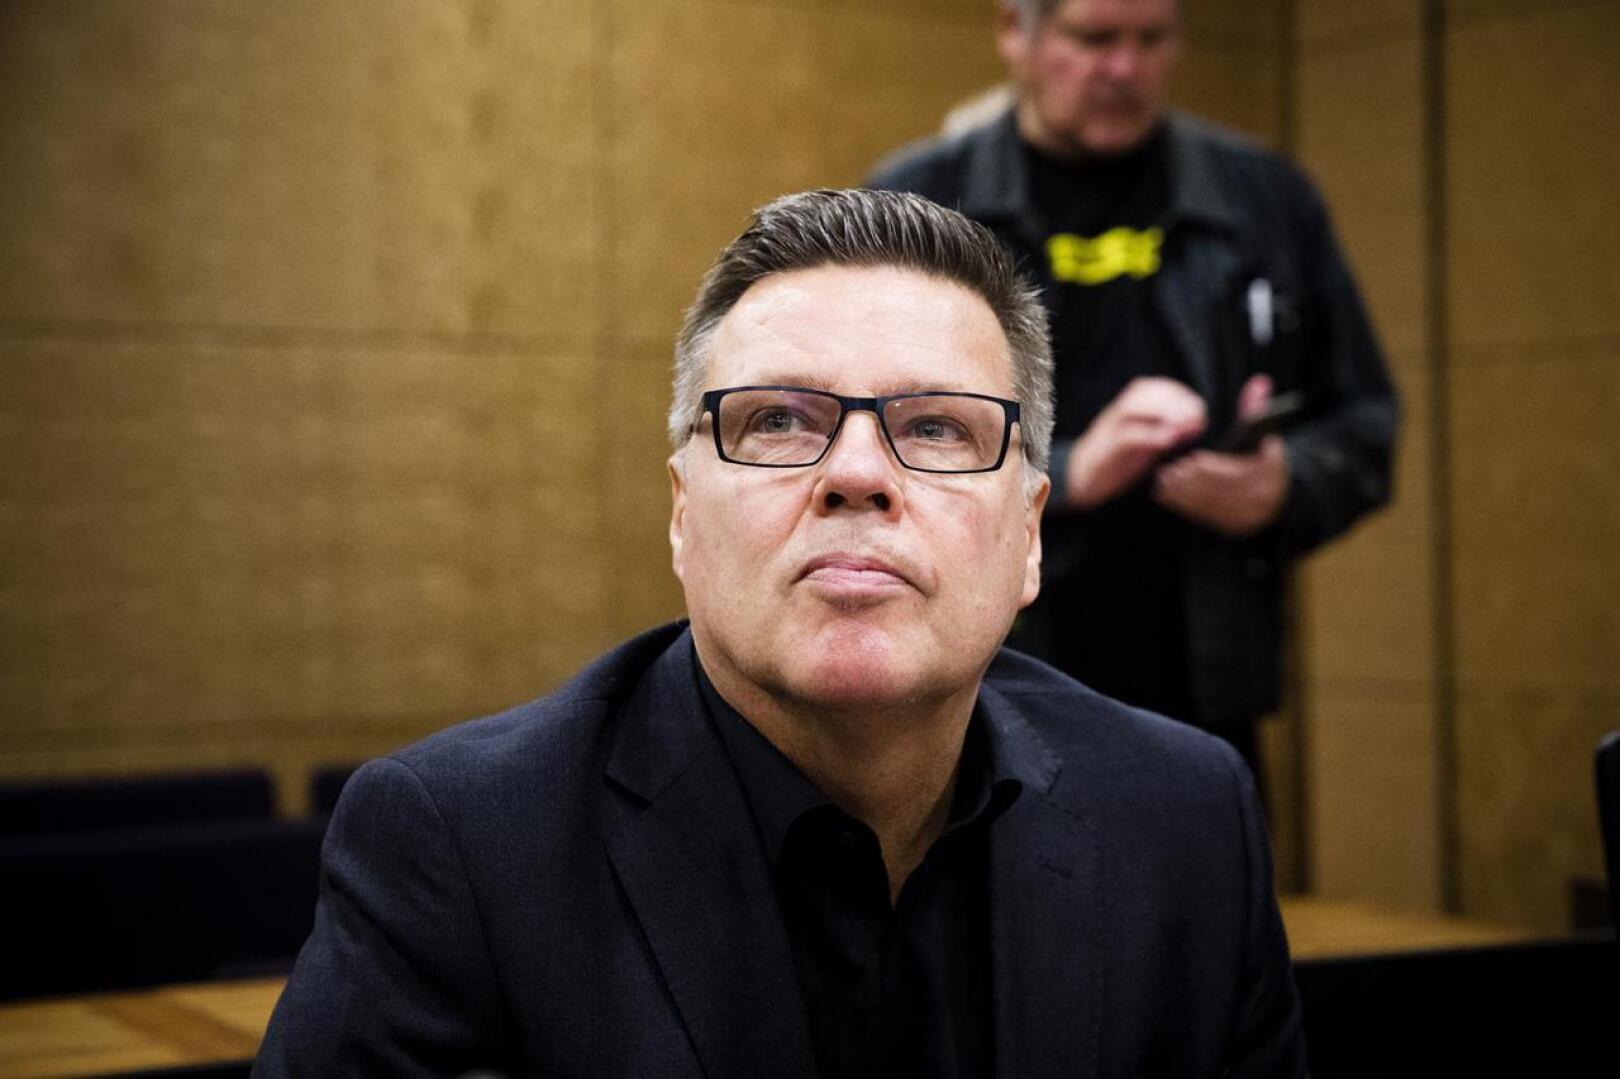 Helsingin huumepoliisin entisen päällikön Jari Aarnion epäillään tienneen etukäteen Vuosaaressa vuonna 2003 tehdystä palkkamurhasta. Aarnio kiistää rikosepäilyn.